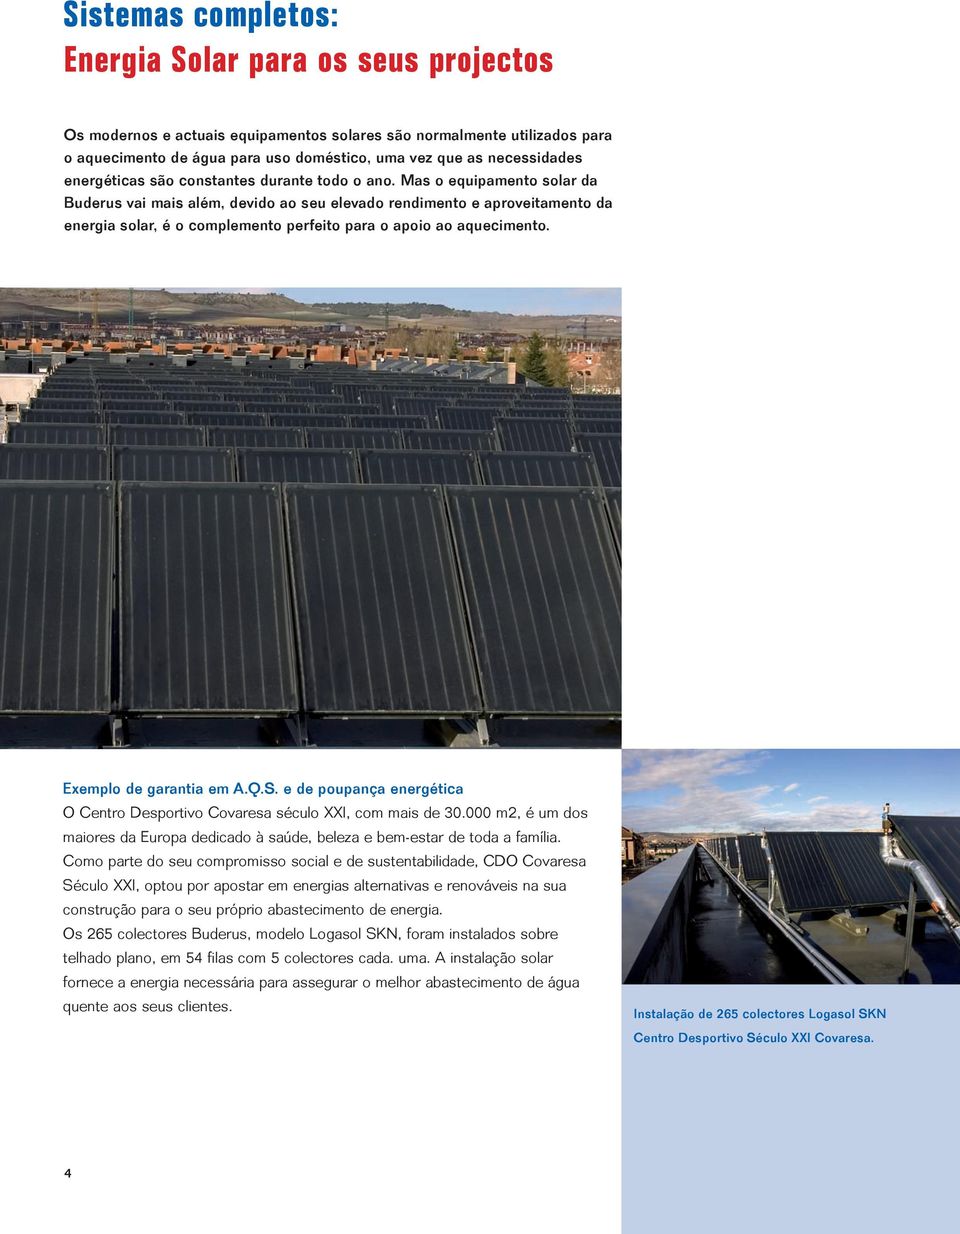 Mas o equipamento solar da Buderus vai mais além, devido ao seu elevado rendimento e aproveitamento da energia solar, é o complemento perfeito para o apoio ao aquecimento. Exemplo de garantia em A.Q.